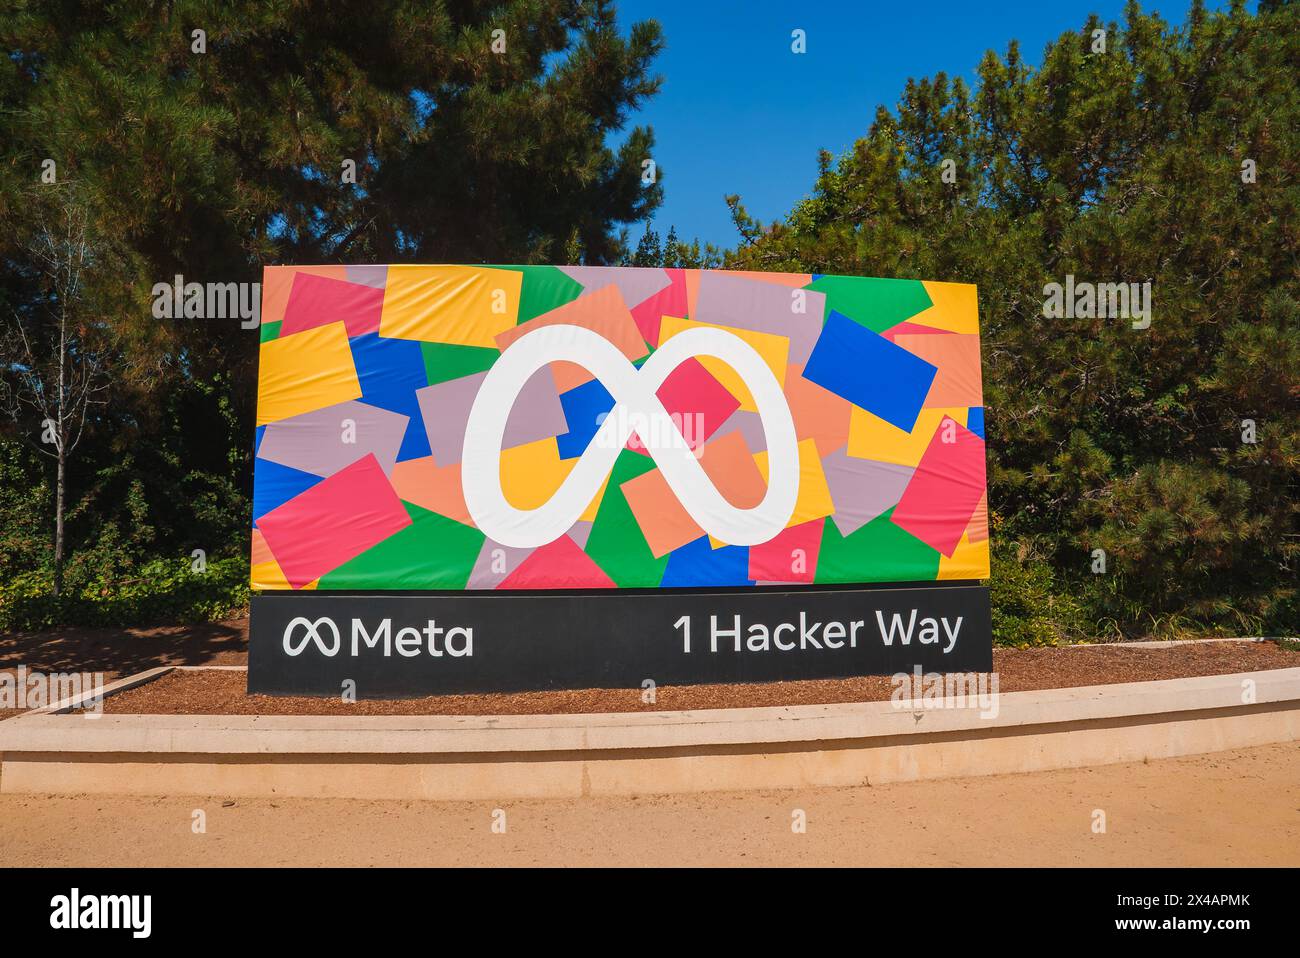 Meta Headquarters Anmeldung Landschaftsgestalt, 1 Hacker Way Stockfoto